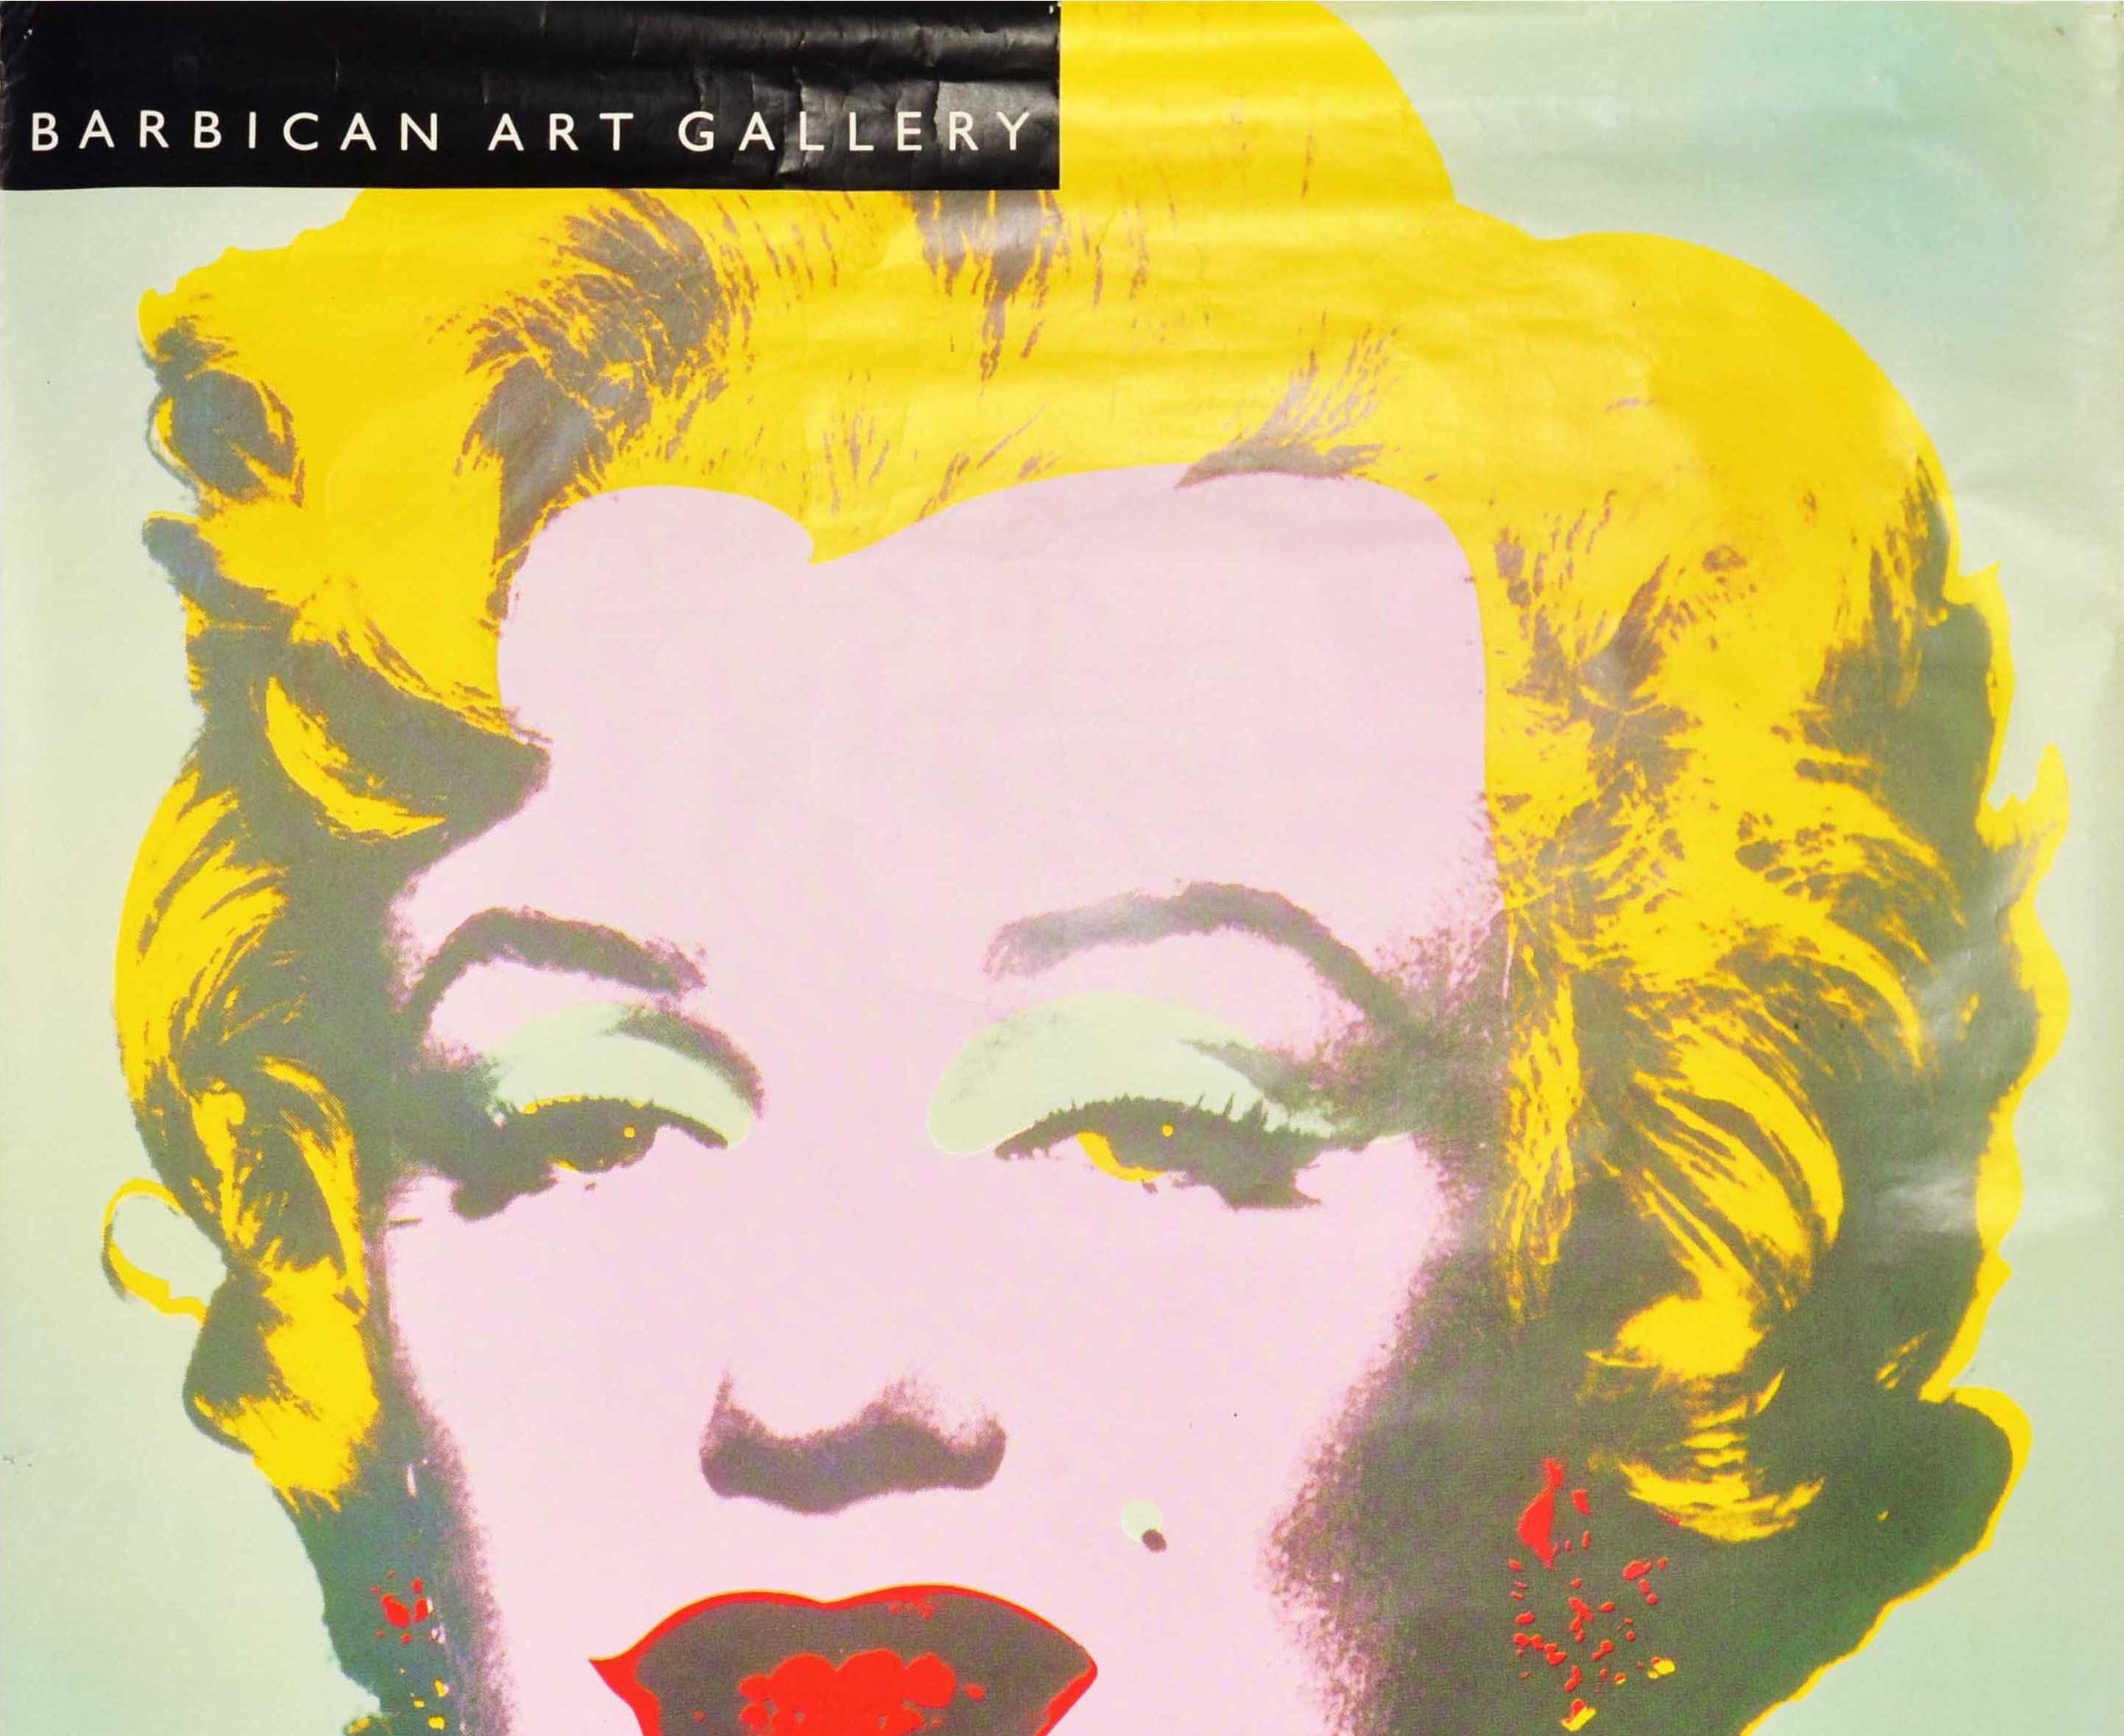 Affiche publicitaire originale d'époque pour une exposition à la Barbican Art Gallery - The Warhol Look Glamour - du 28 mai au 16 août 1998, reprenant le dessin pop art emblématique des années 1960 du célèbre artiste Andy Warhol (1928-1987) montrant